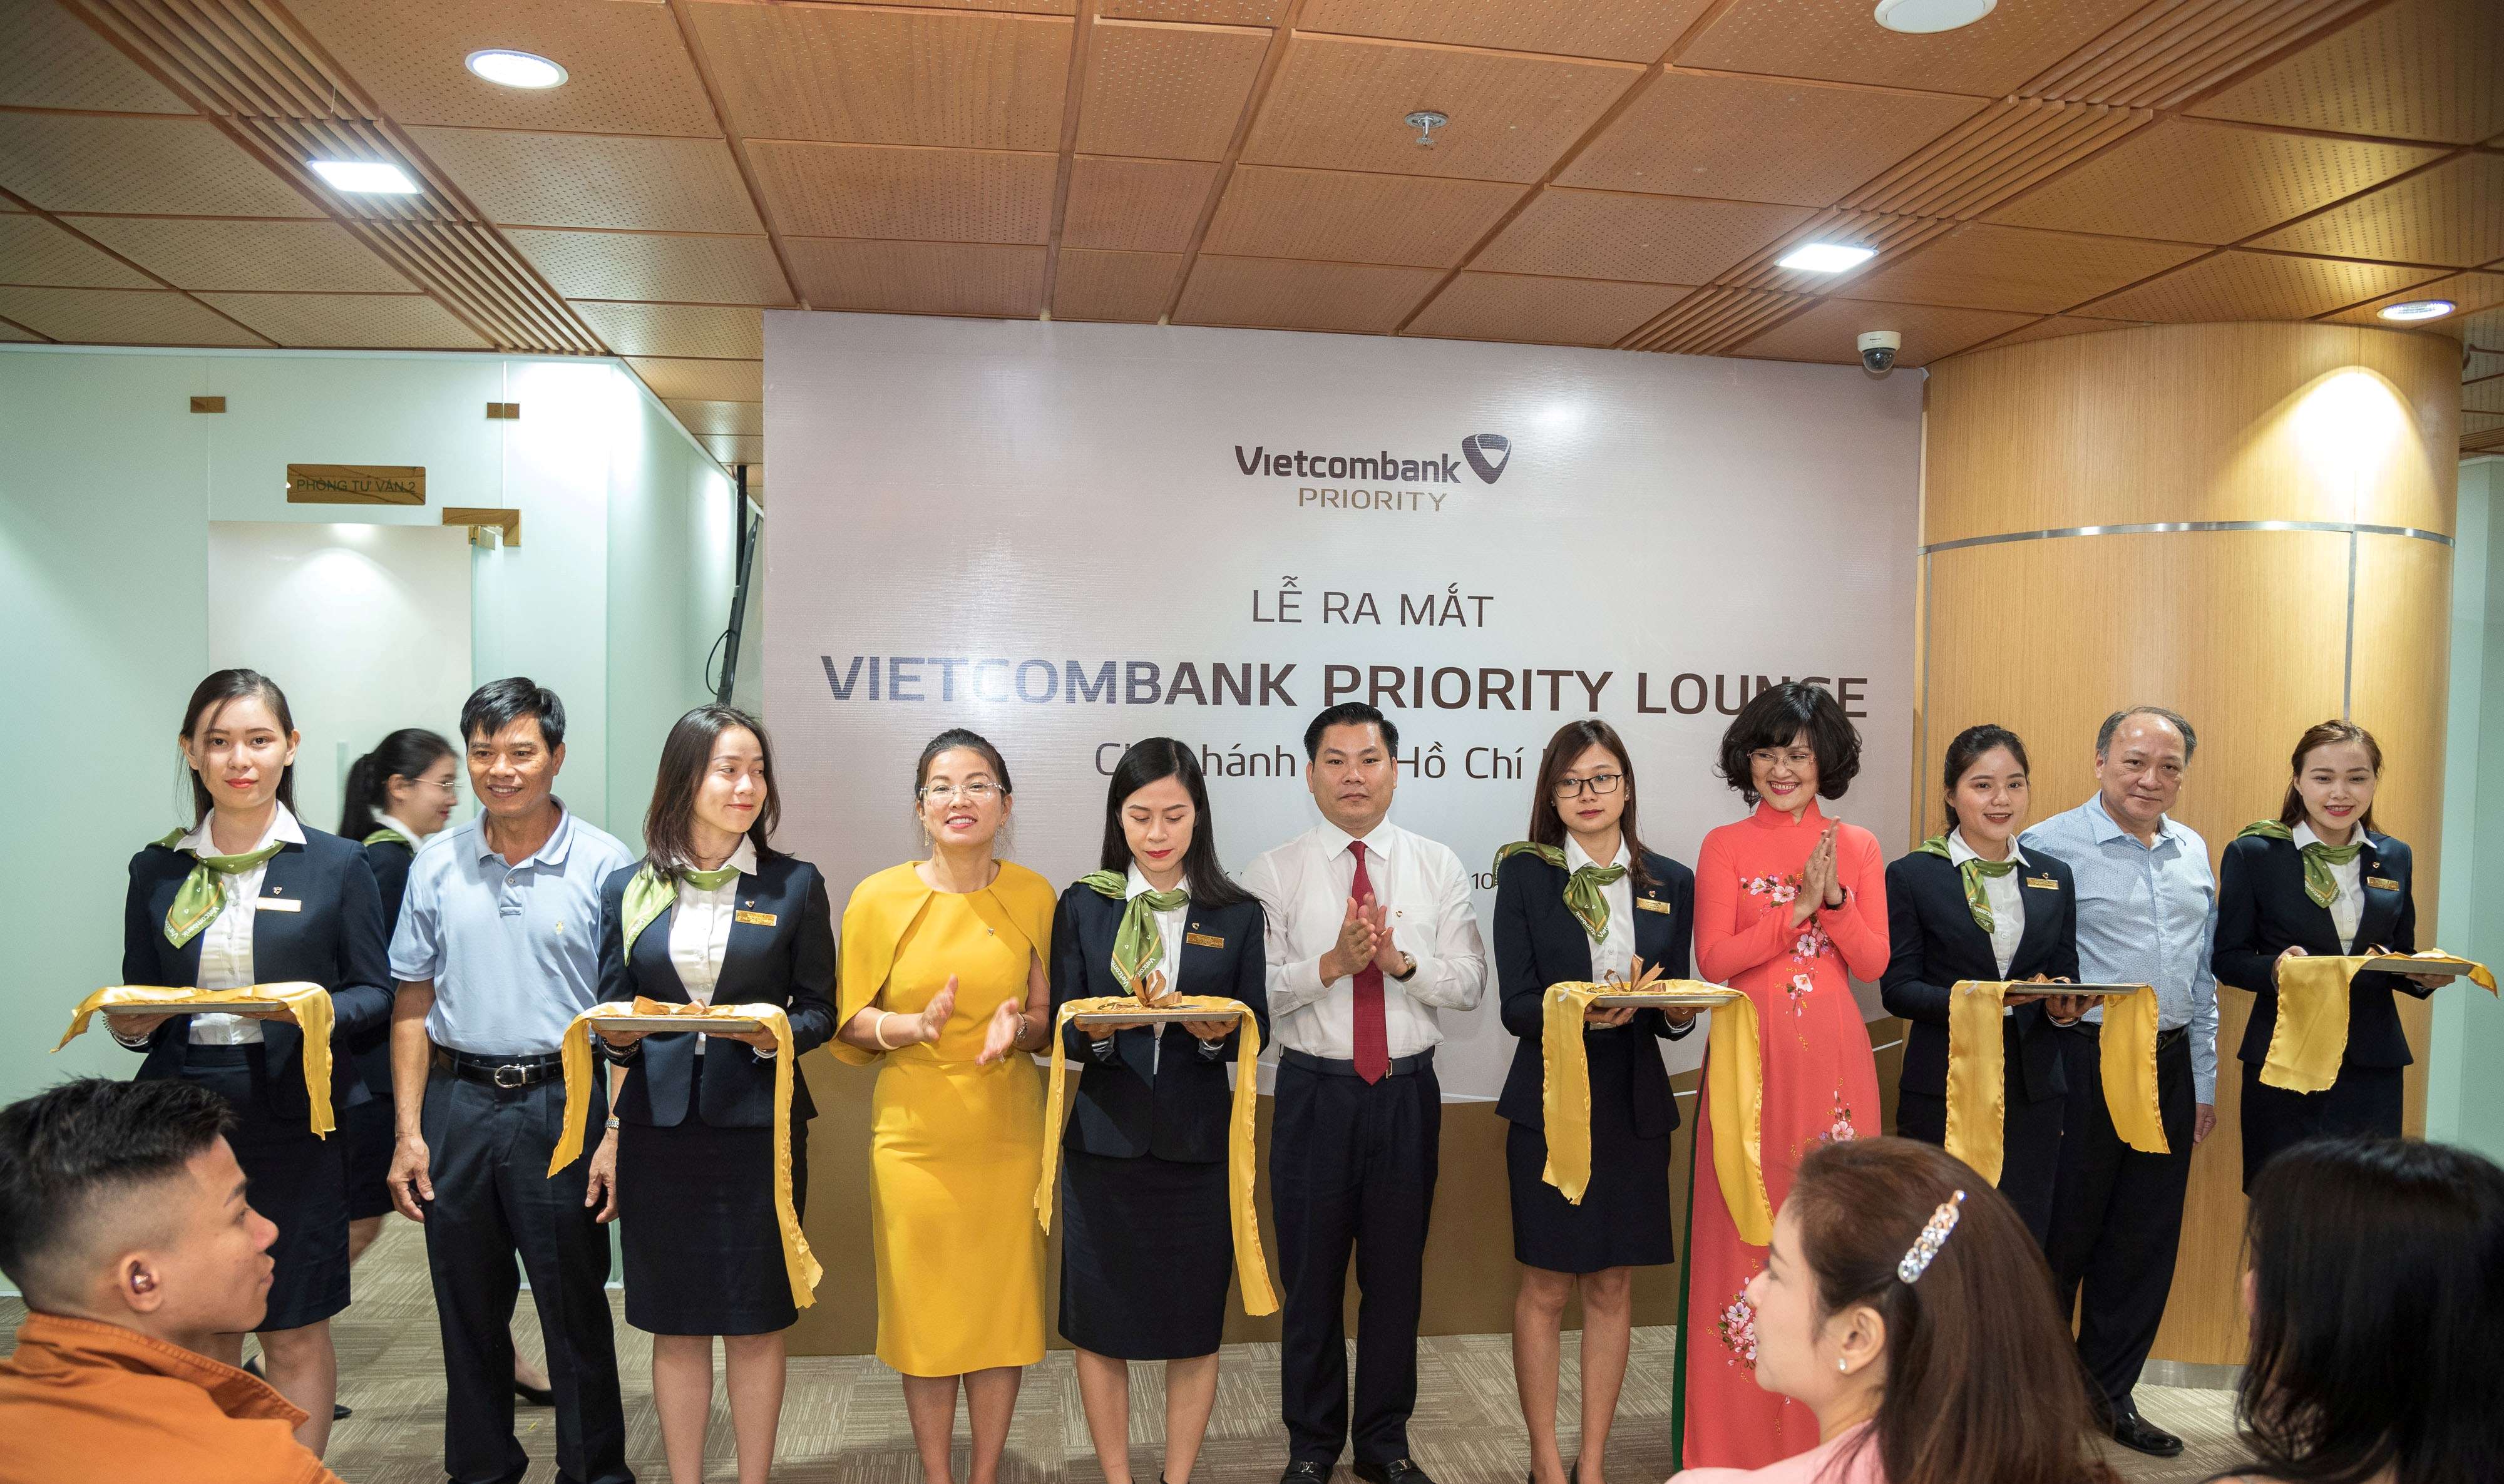 Vietcombank TP.Hồ Chí Minh khai trương hoạt động khu vực giao dịch dành cho khách hàng VIP - Vietcombank Priority Lounge